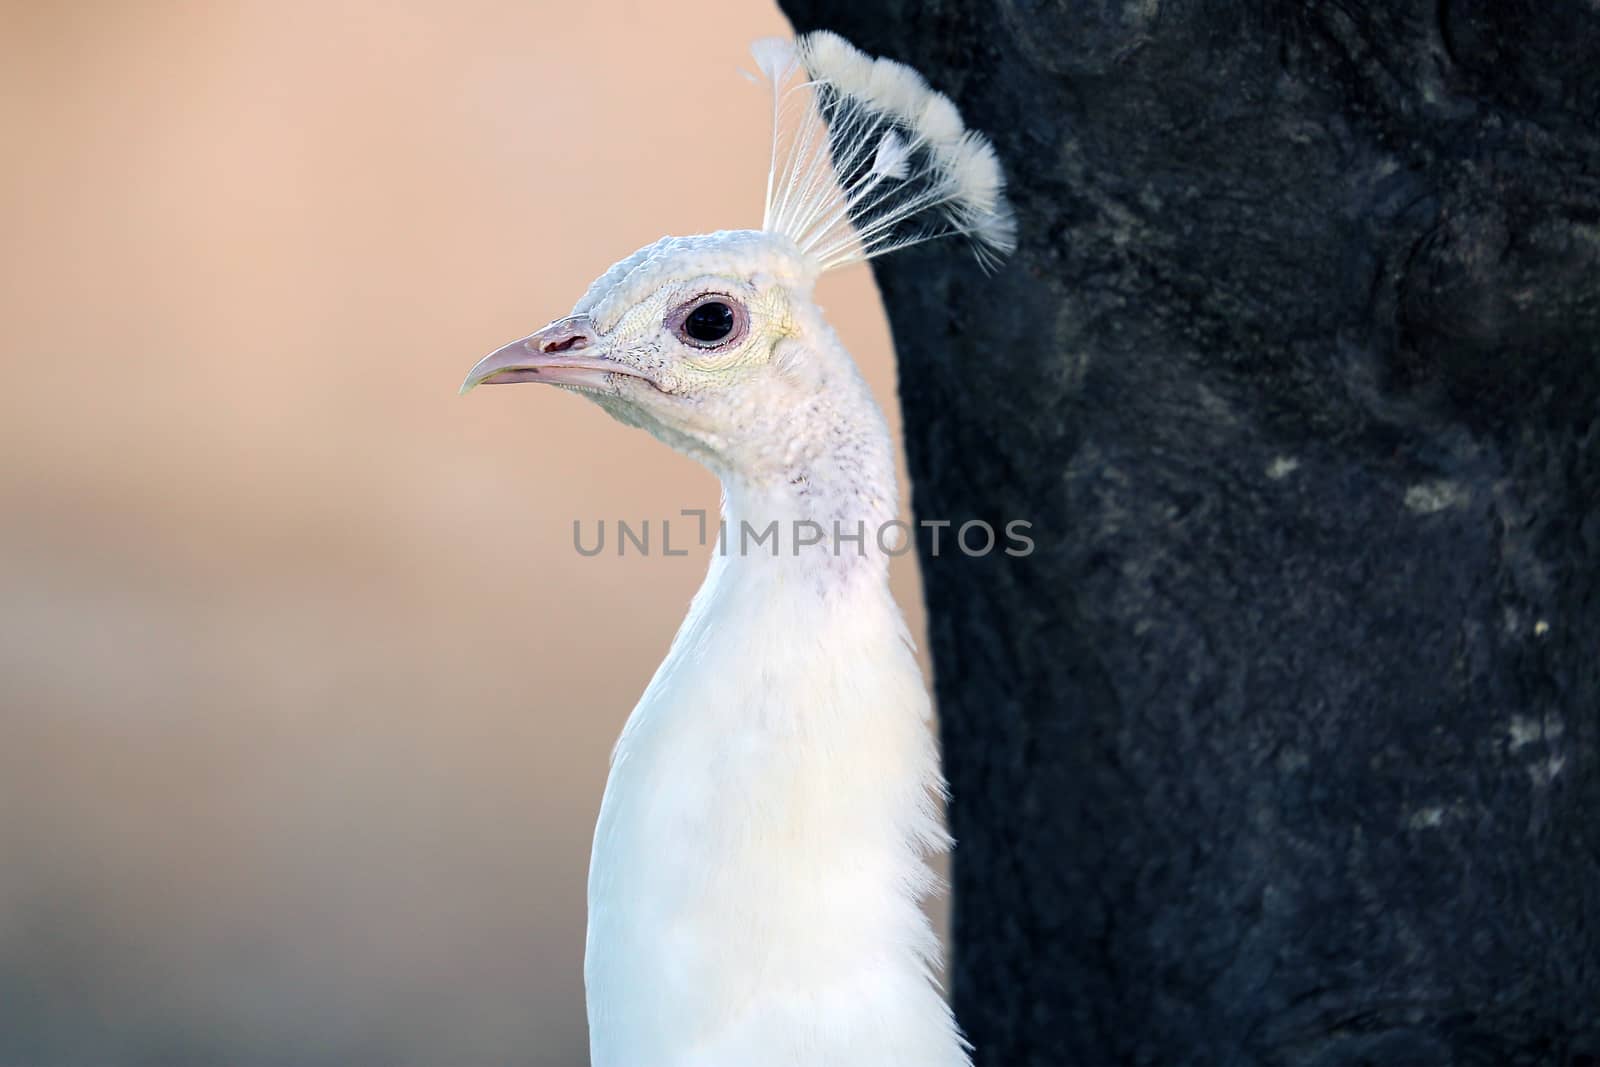 White Peacock Profile by bensib